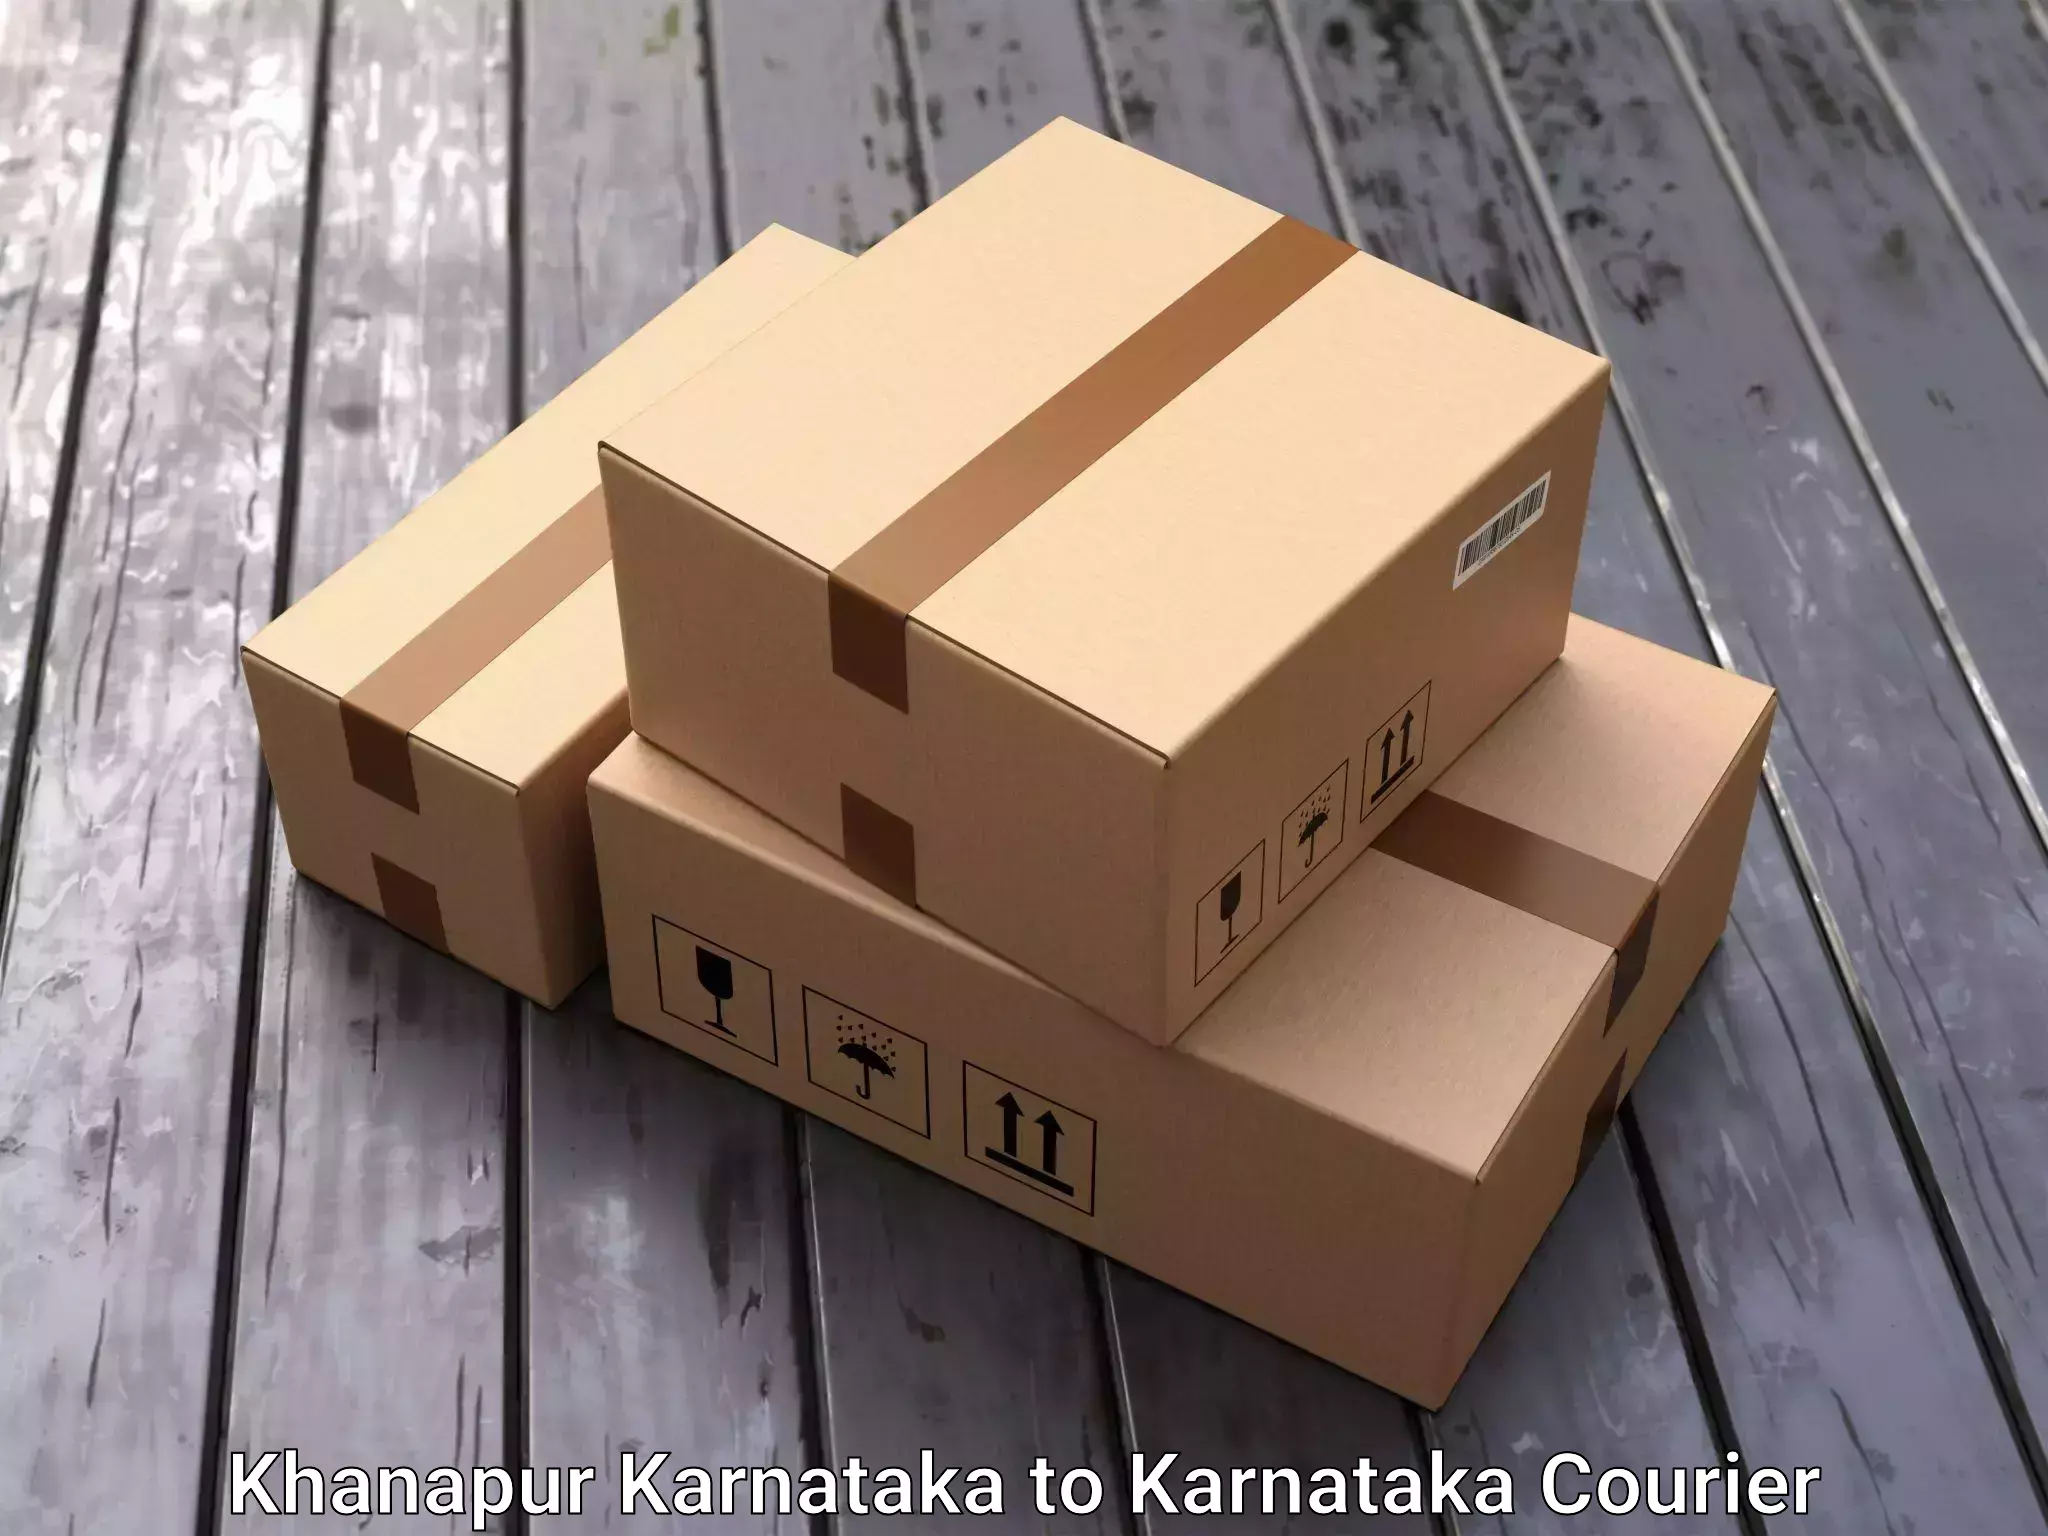 Efficient furniture transport Khanapur Karnataka to Karnataka